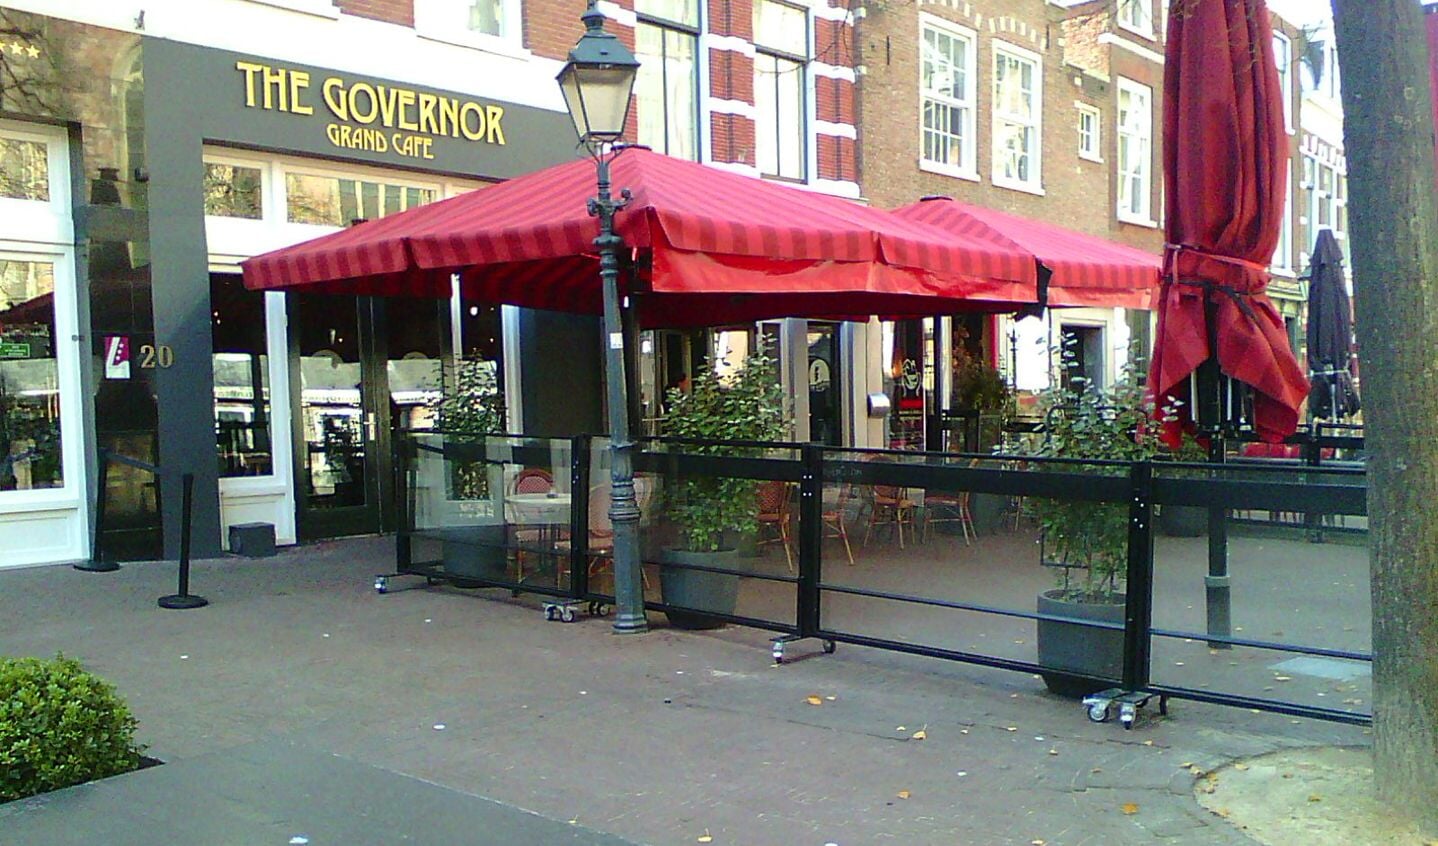 Lege terrassen en lege panden sieren de stad Haarlem.